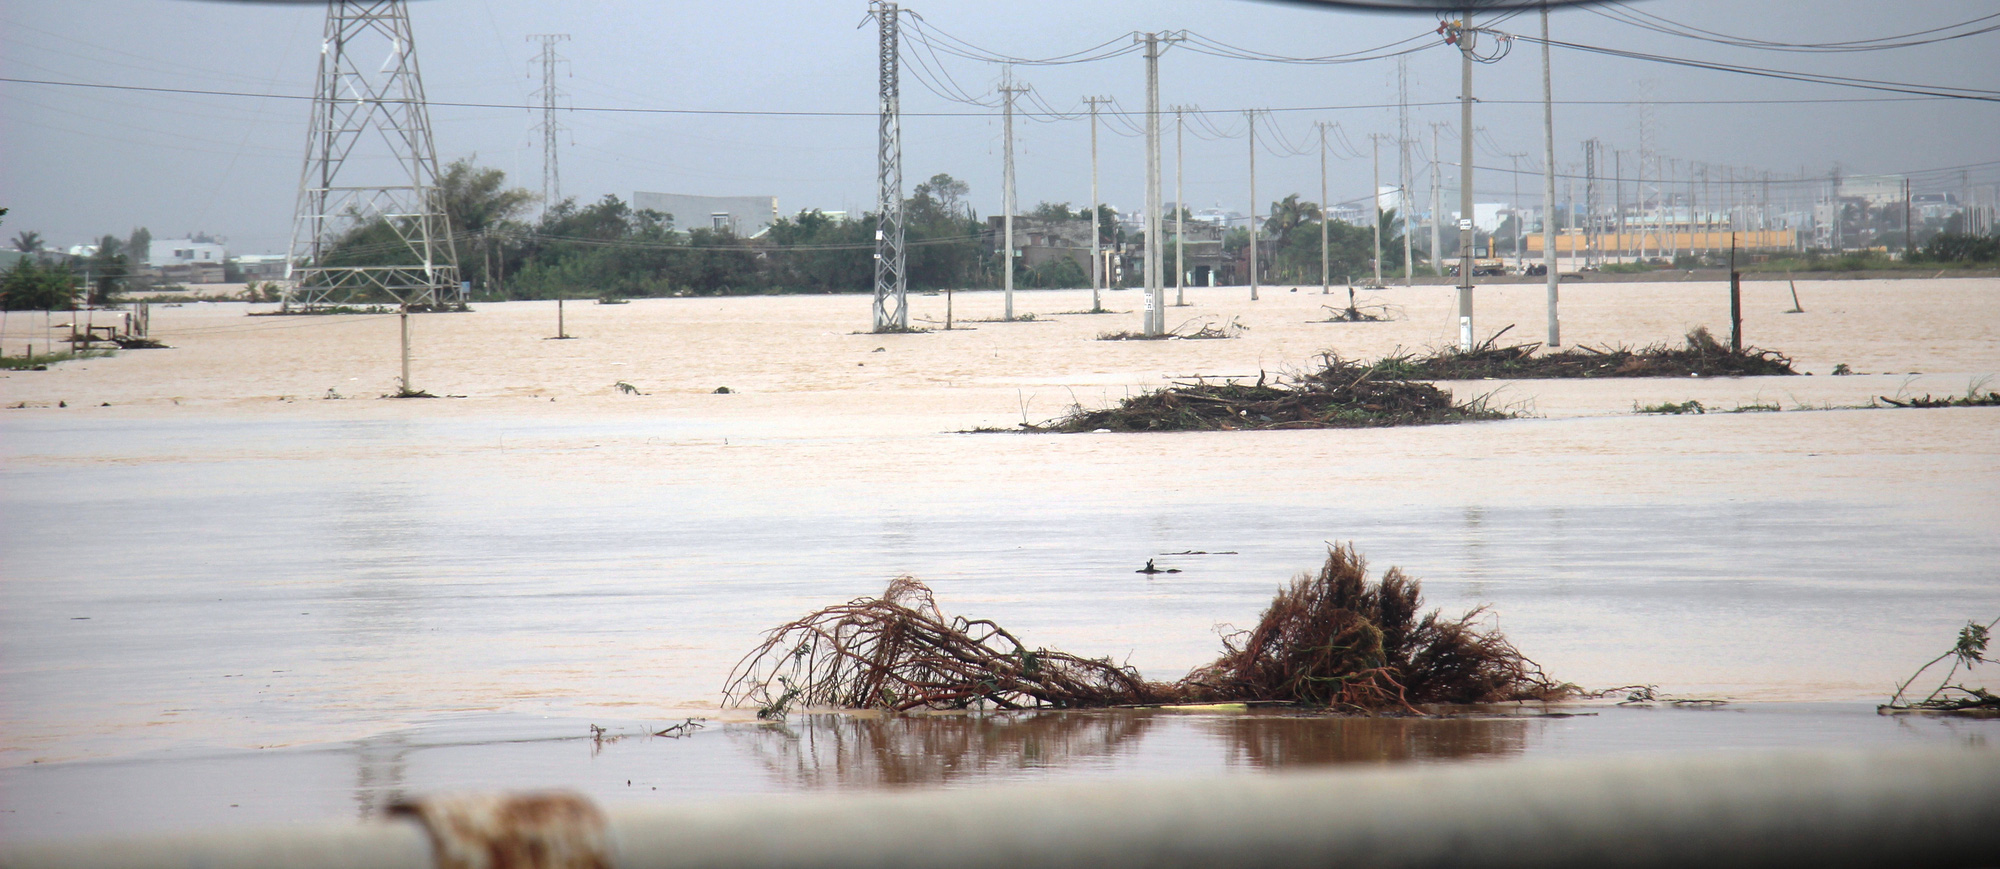 Bão lũ dồn dập, gây thiệt hại nặng nề… ở Bình Định, Phú Yên - Ảnh 2.